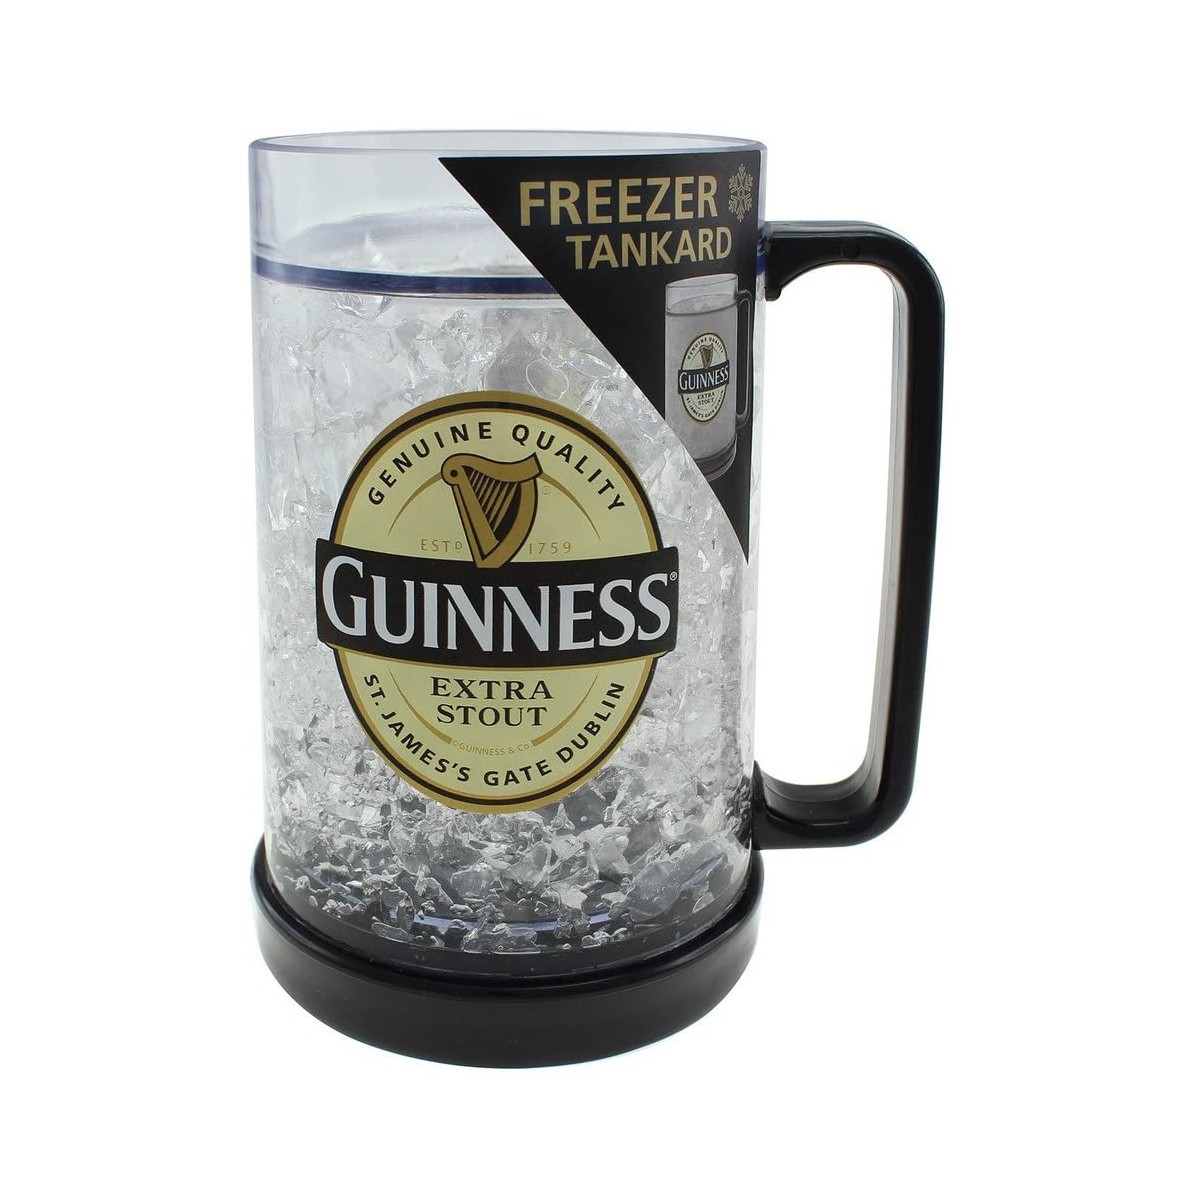 Guinness boccale da freezer, prodotto Ufficiale Guinnes